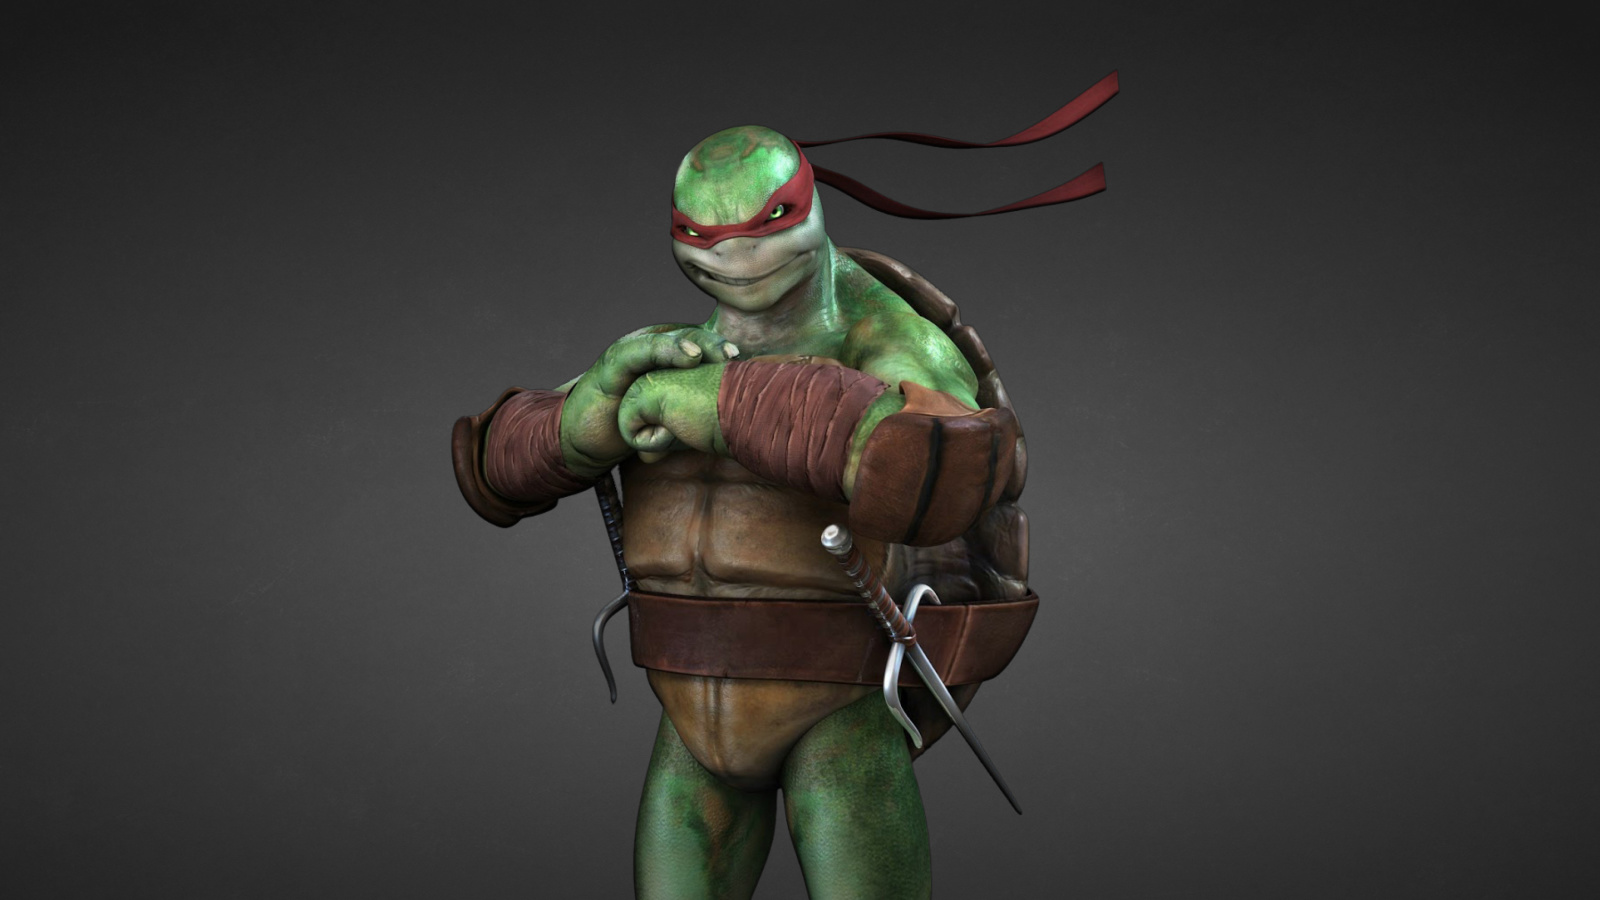 Raphael - Teenage Mutant inja Turtles wallpaper 1600x900